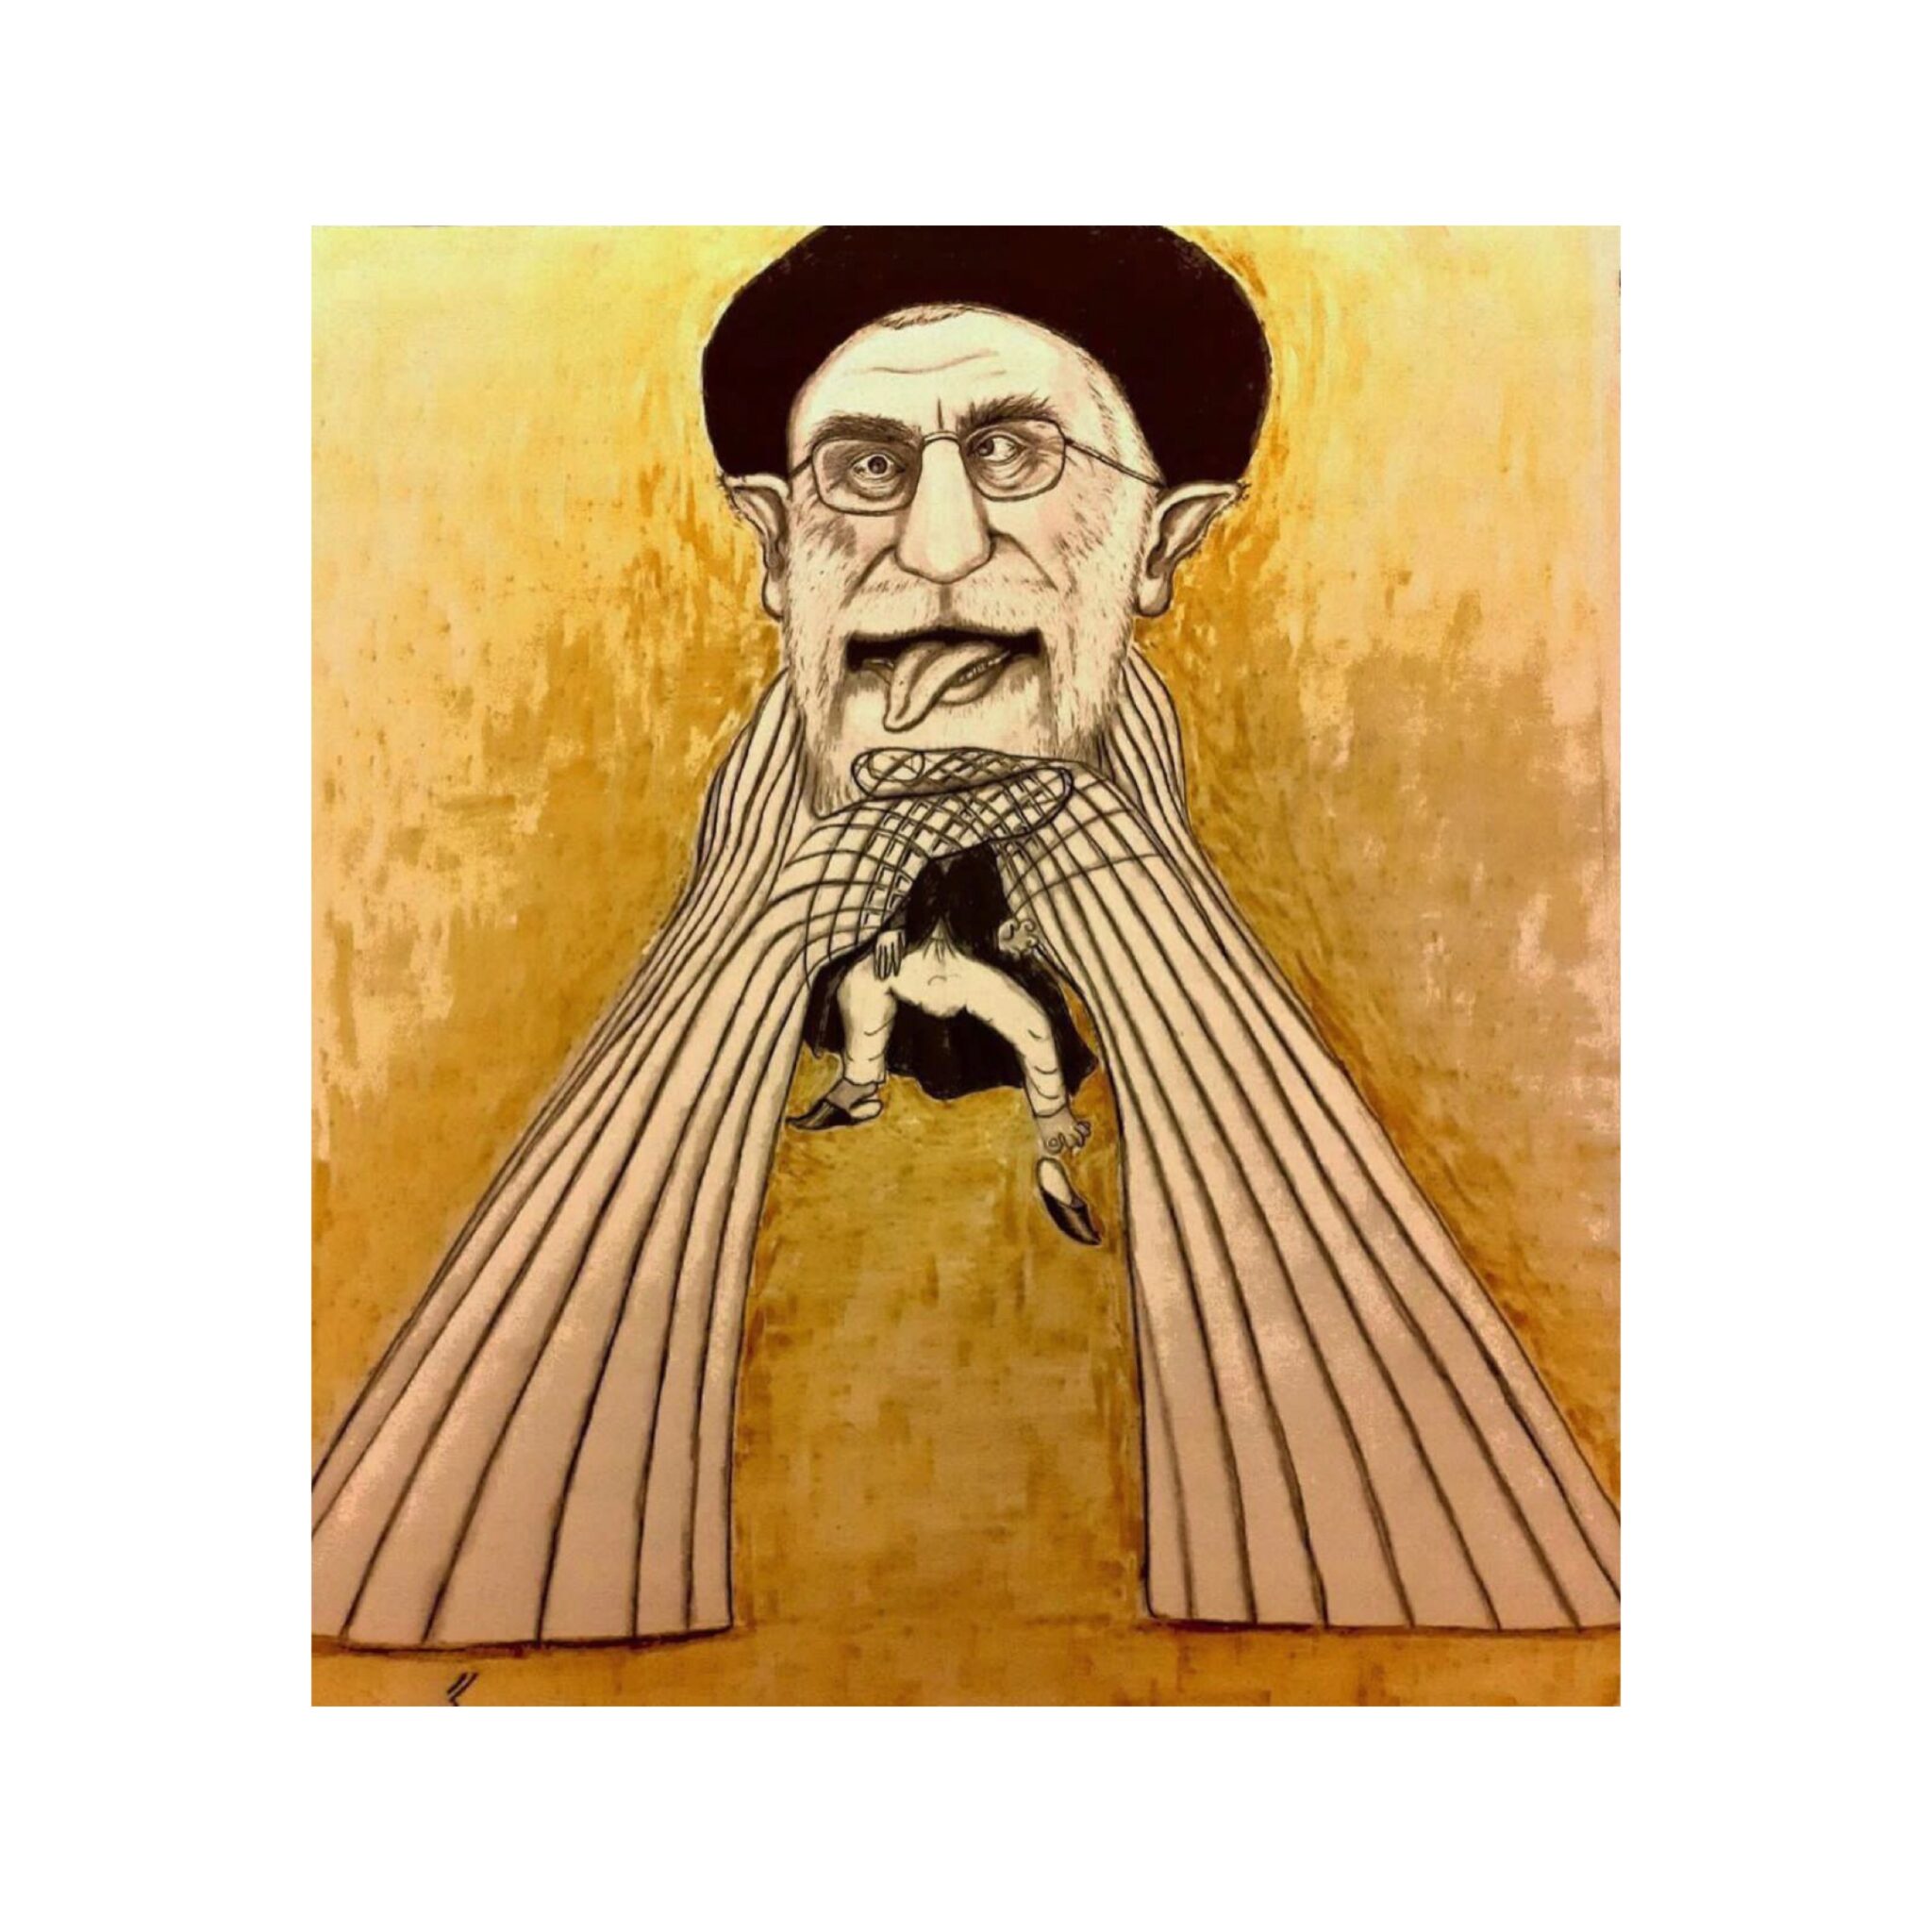 Iran Revolution Art No. f4ec5ca3a28152c583.